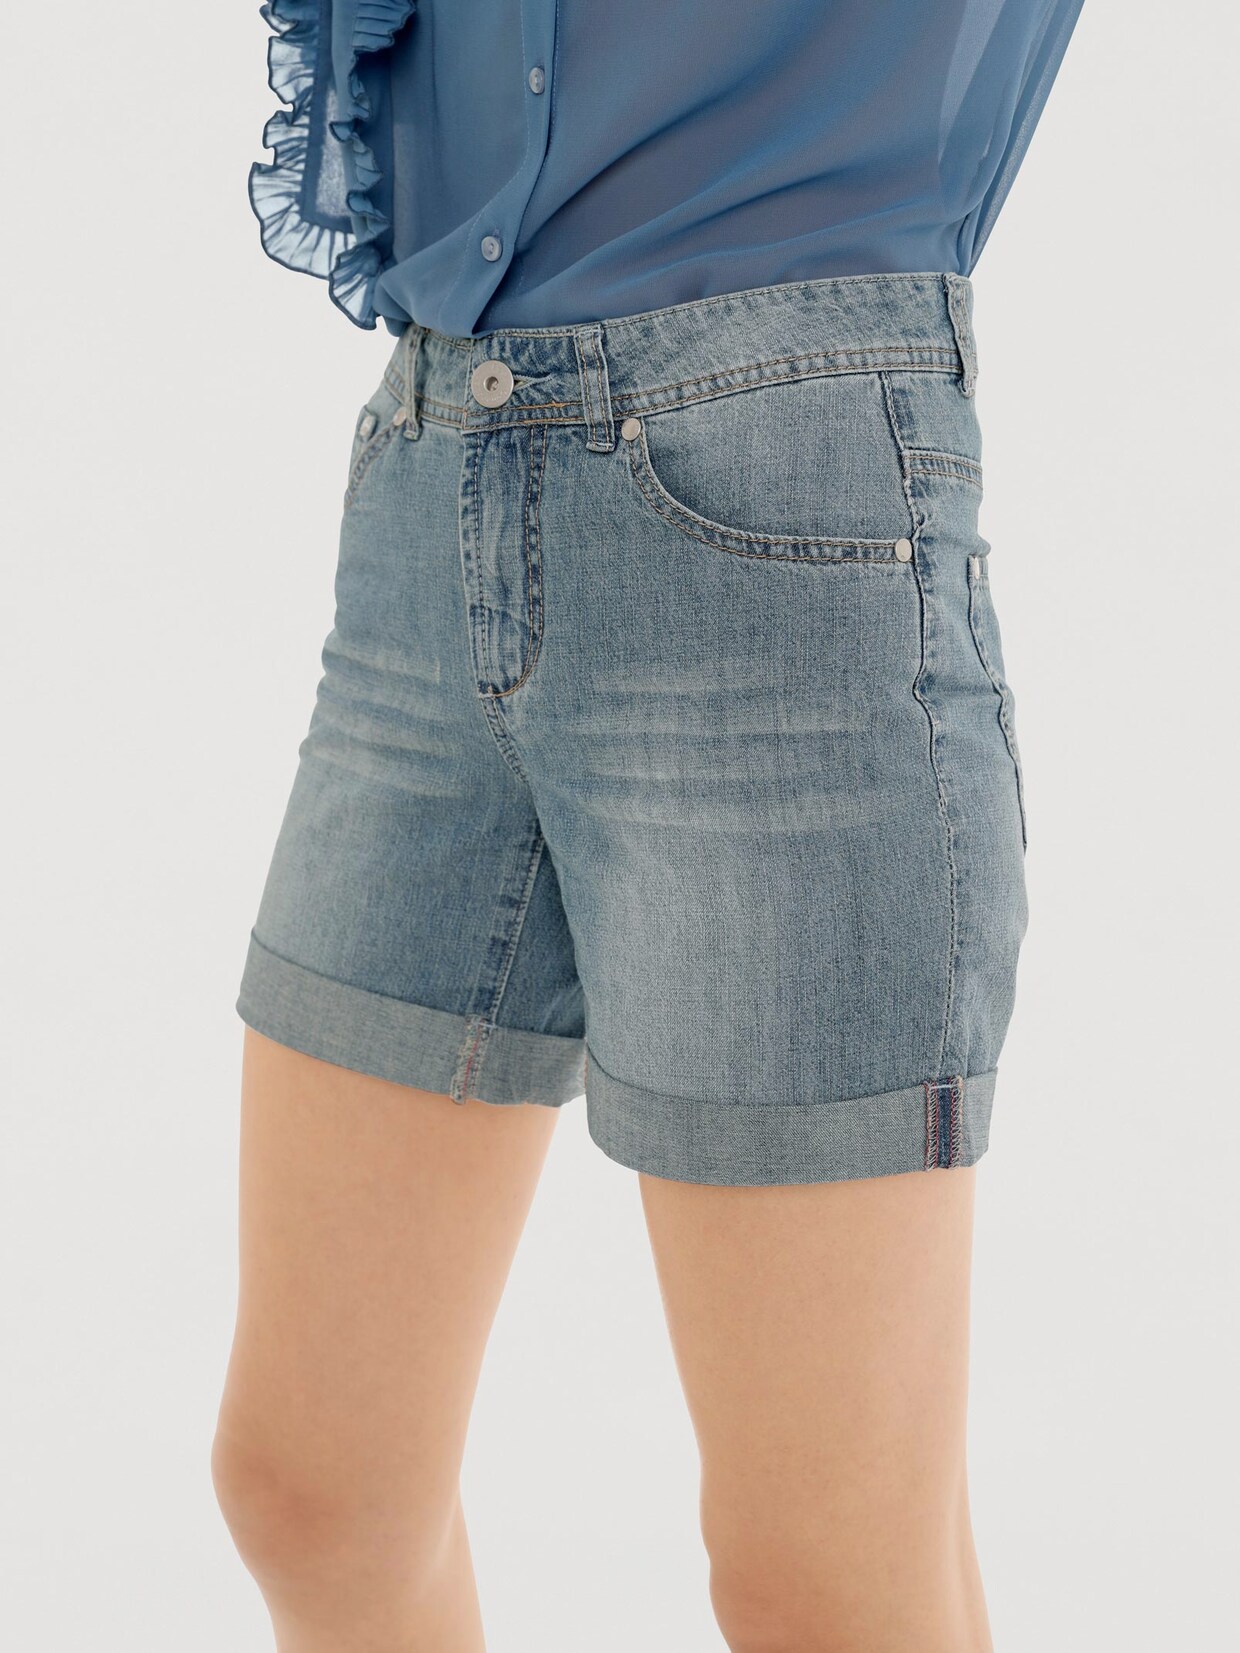 Linea Tesini Jeans-Shorts - blue stone